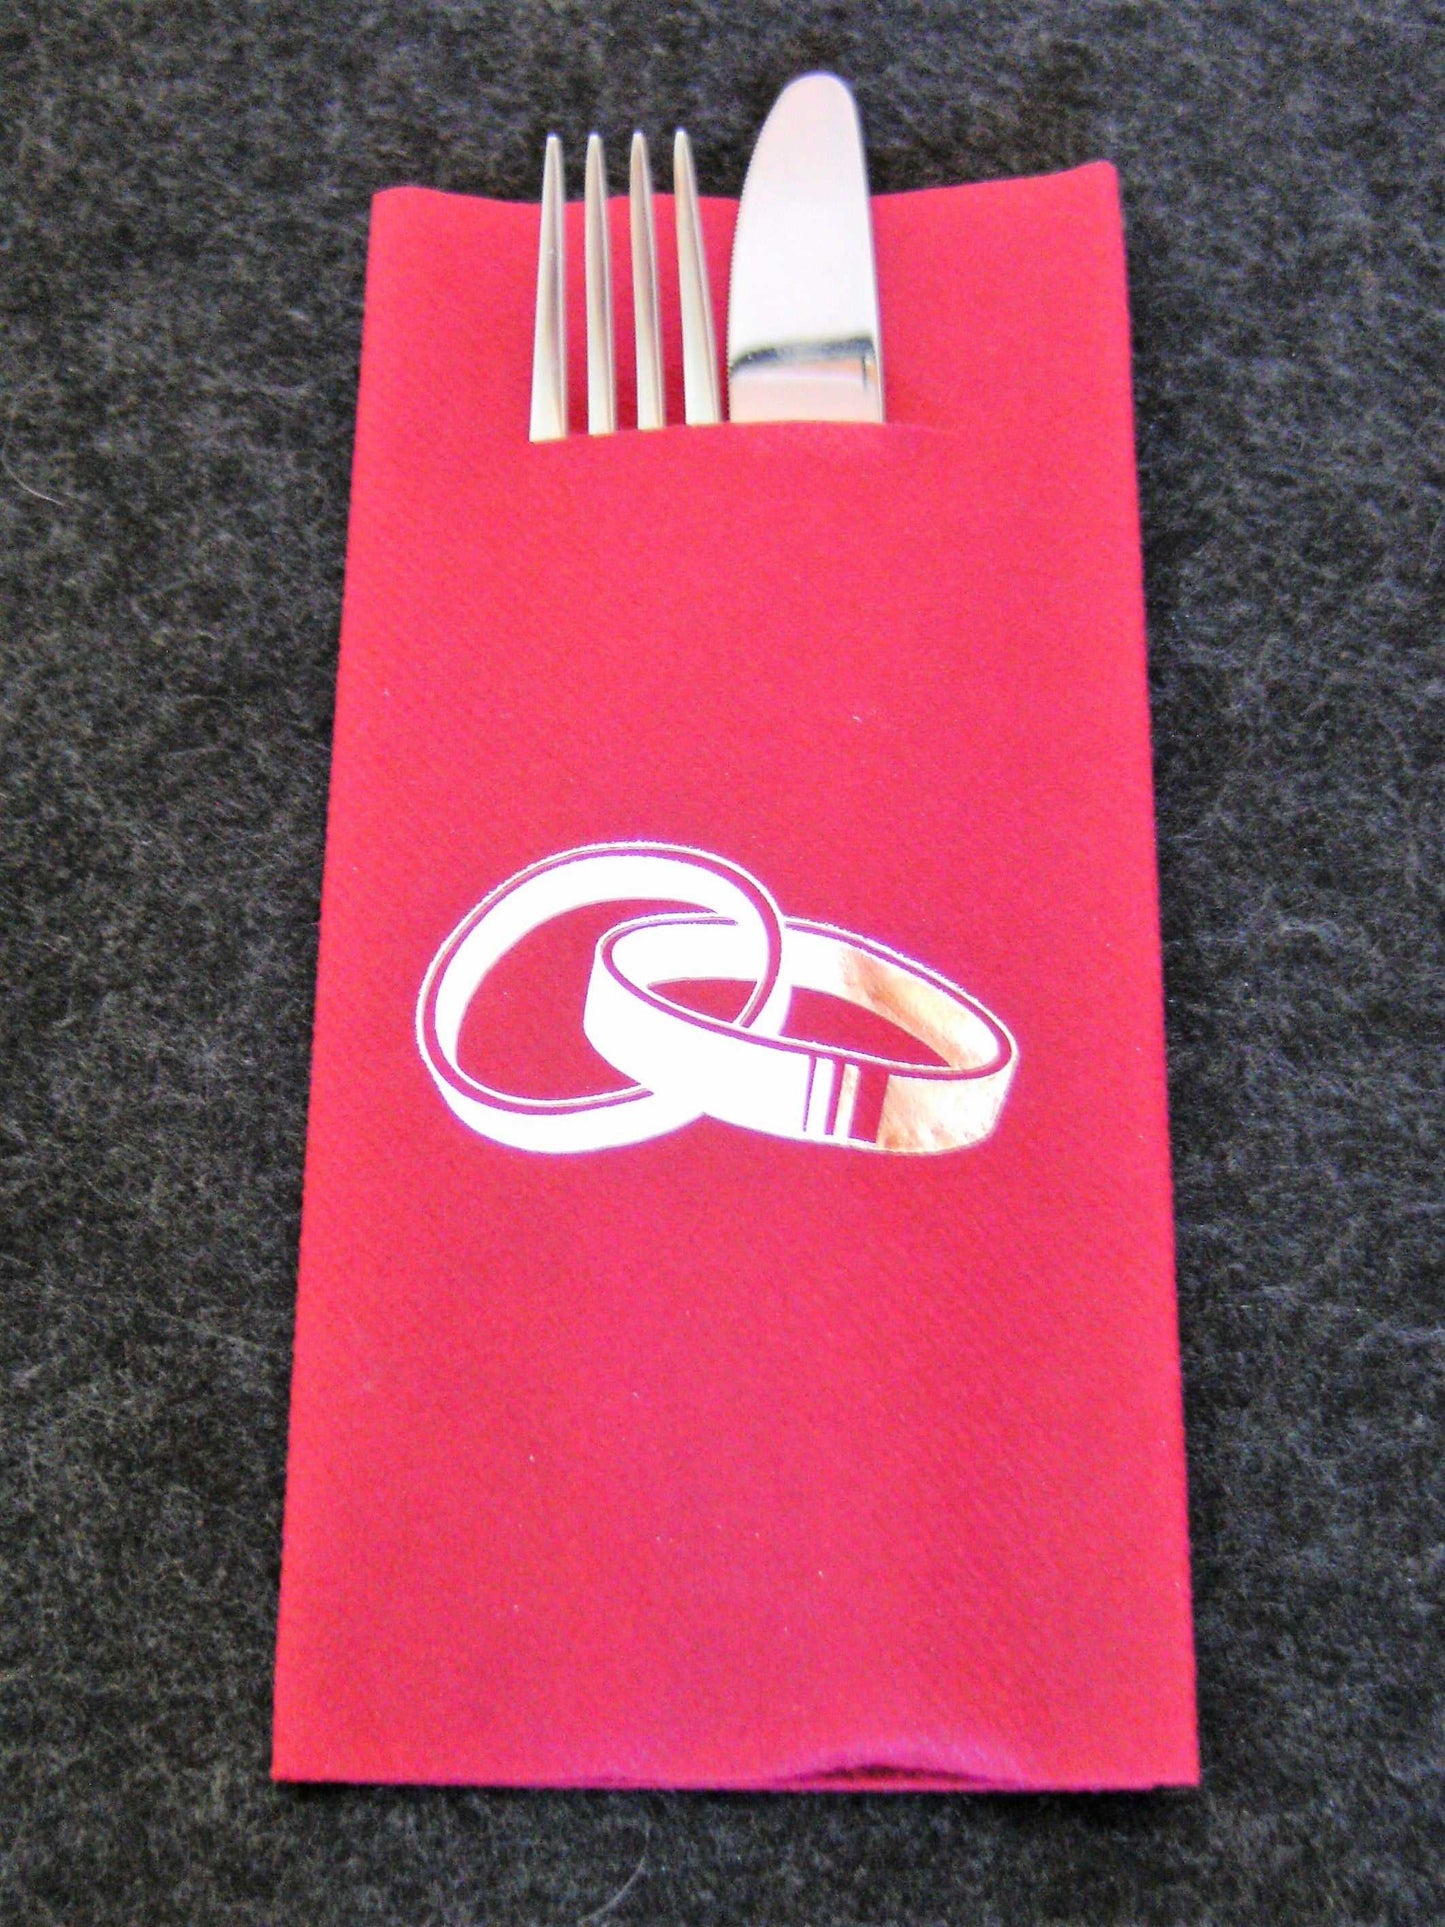 tissuedesign Servietten Pocket-Napkins "Hochzeitsringe"